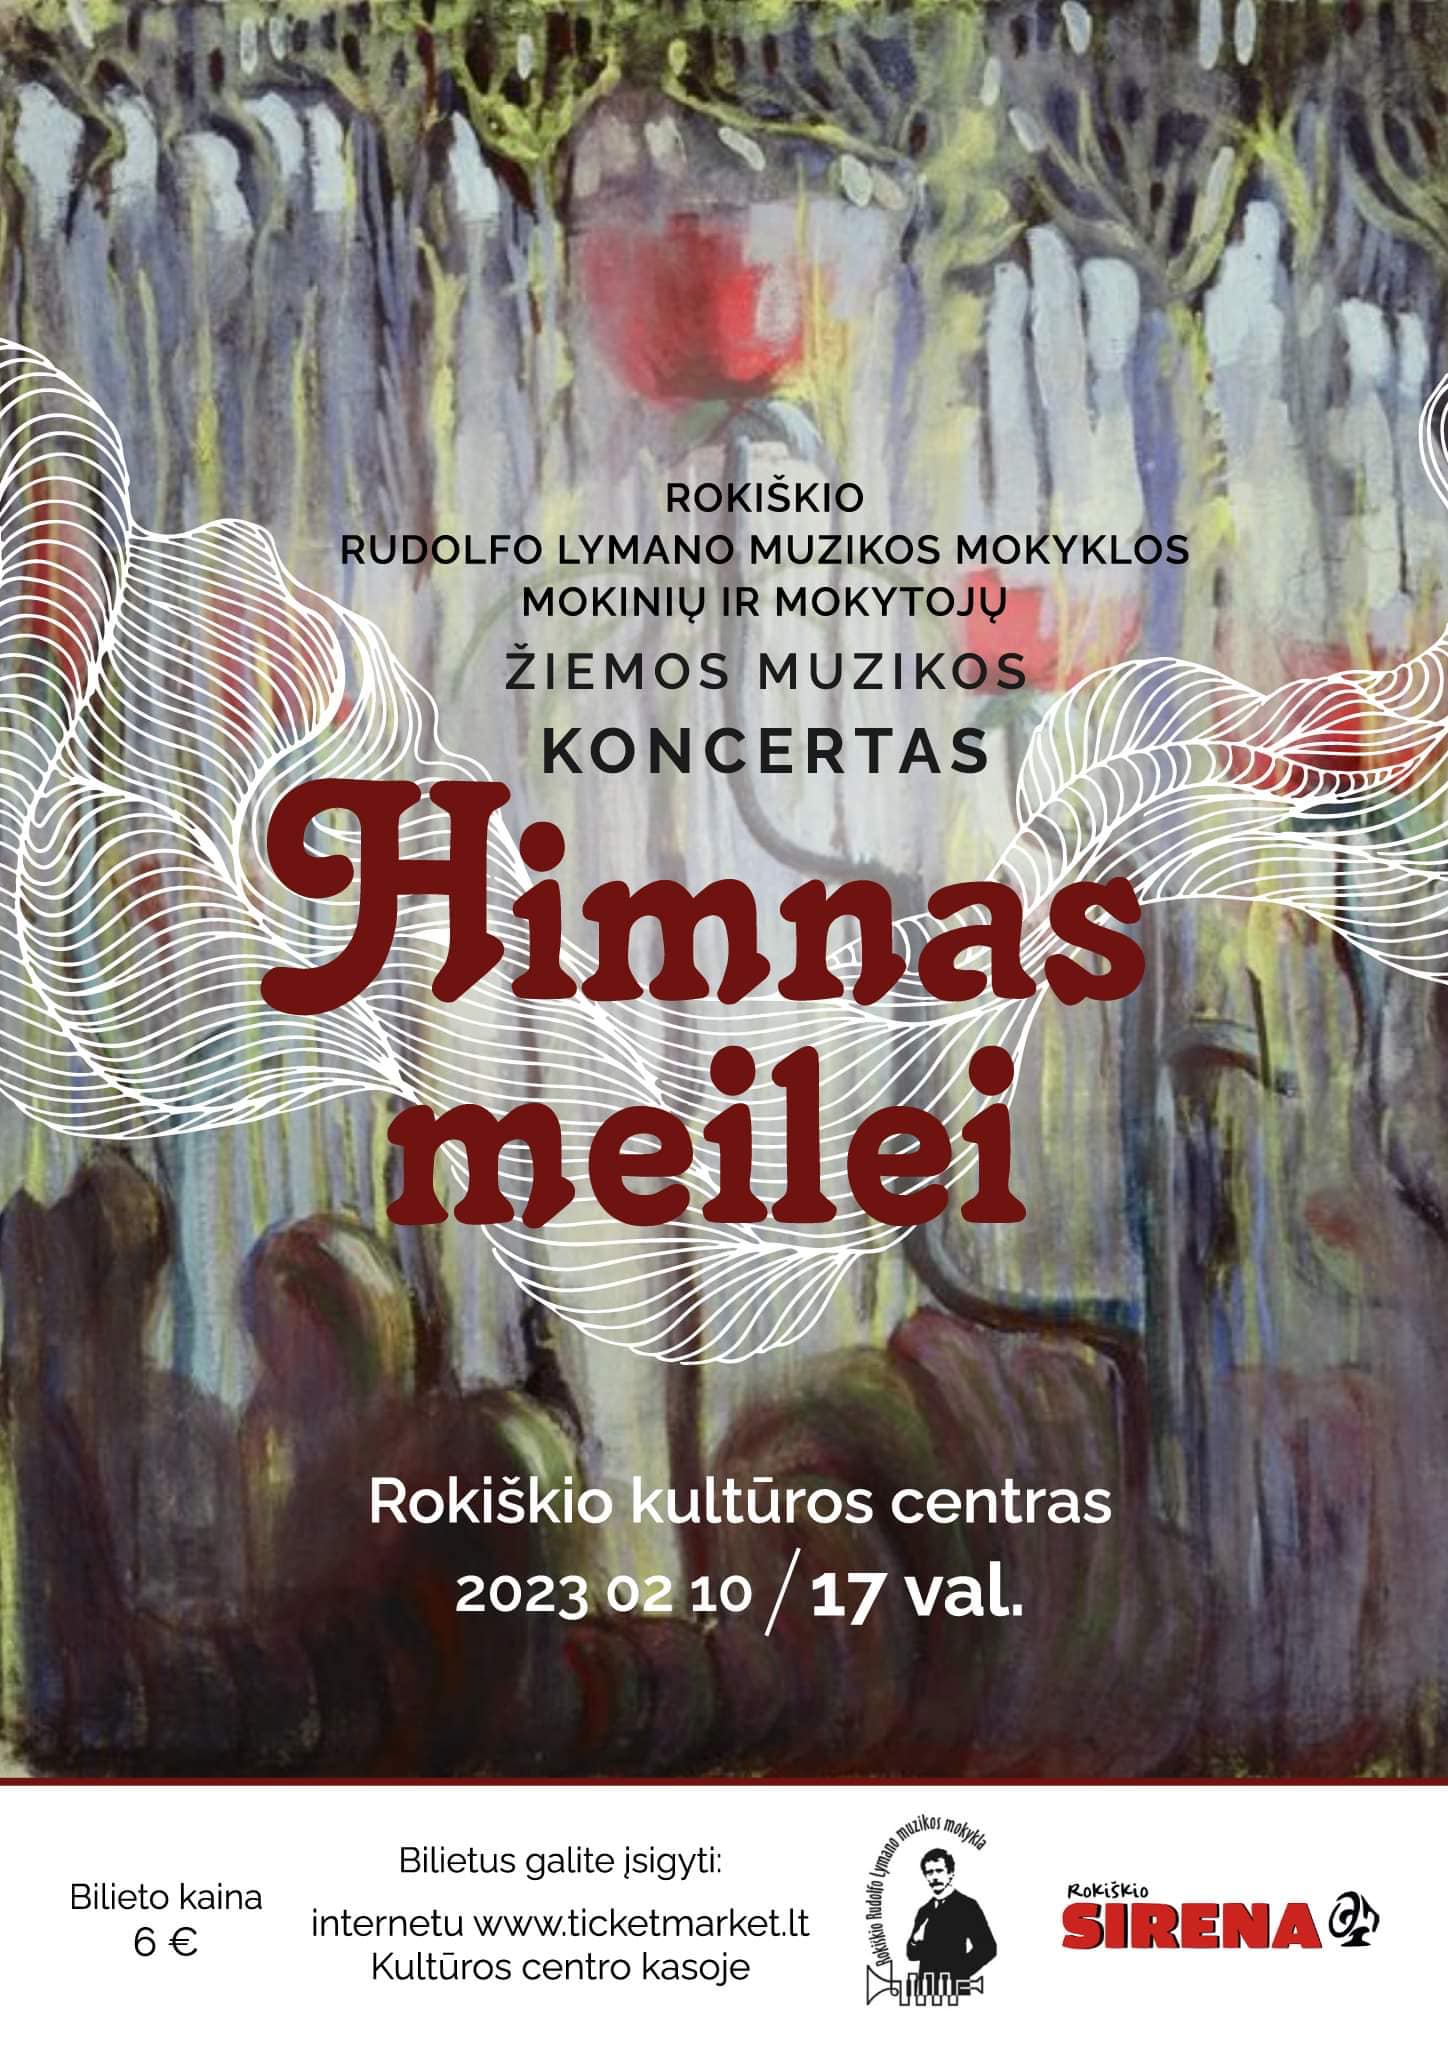 Rudolfo Lymano muzikos mokyklos bendruomenės Žiemos muzikos koncertas „Himnas meilei“ Rokiškio kultūros centre